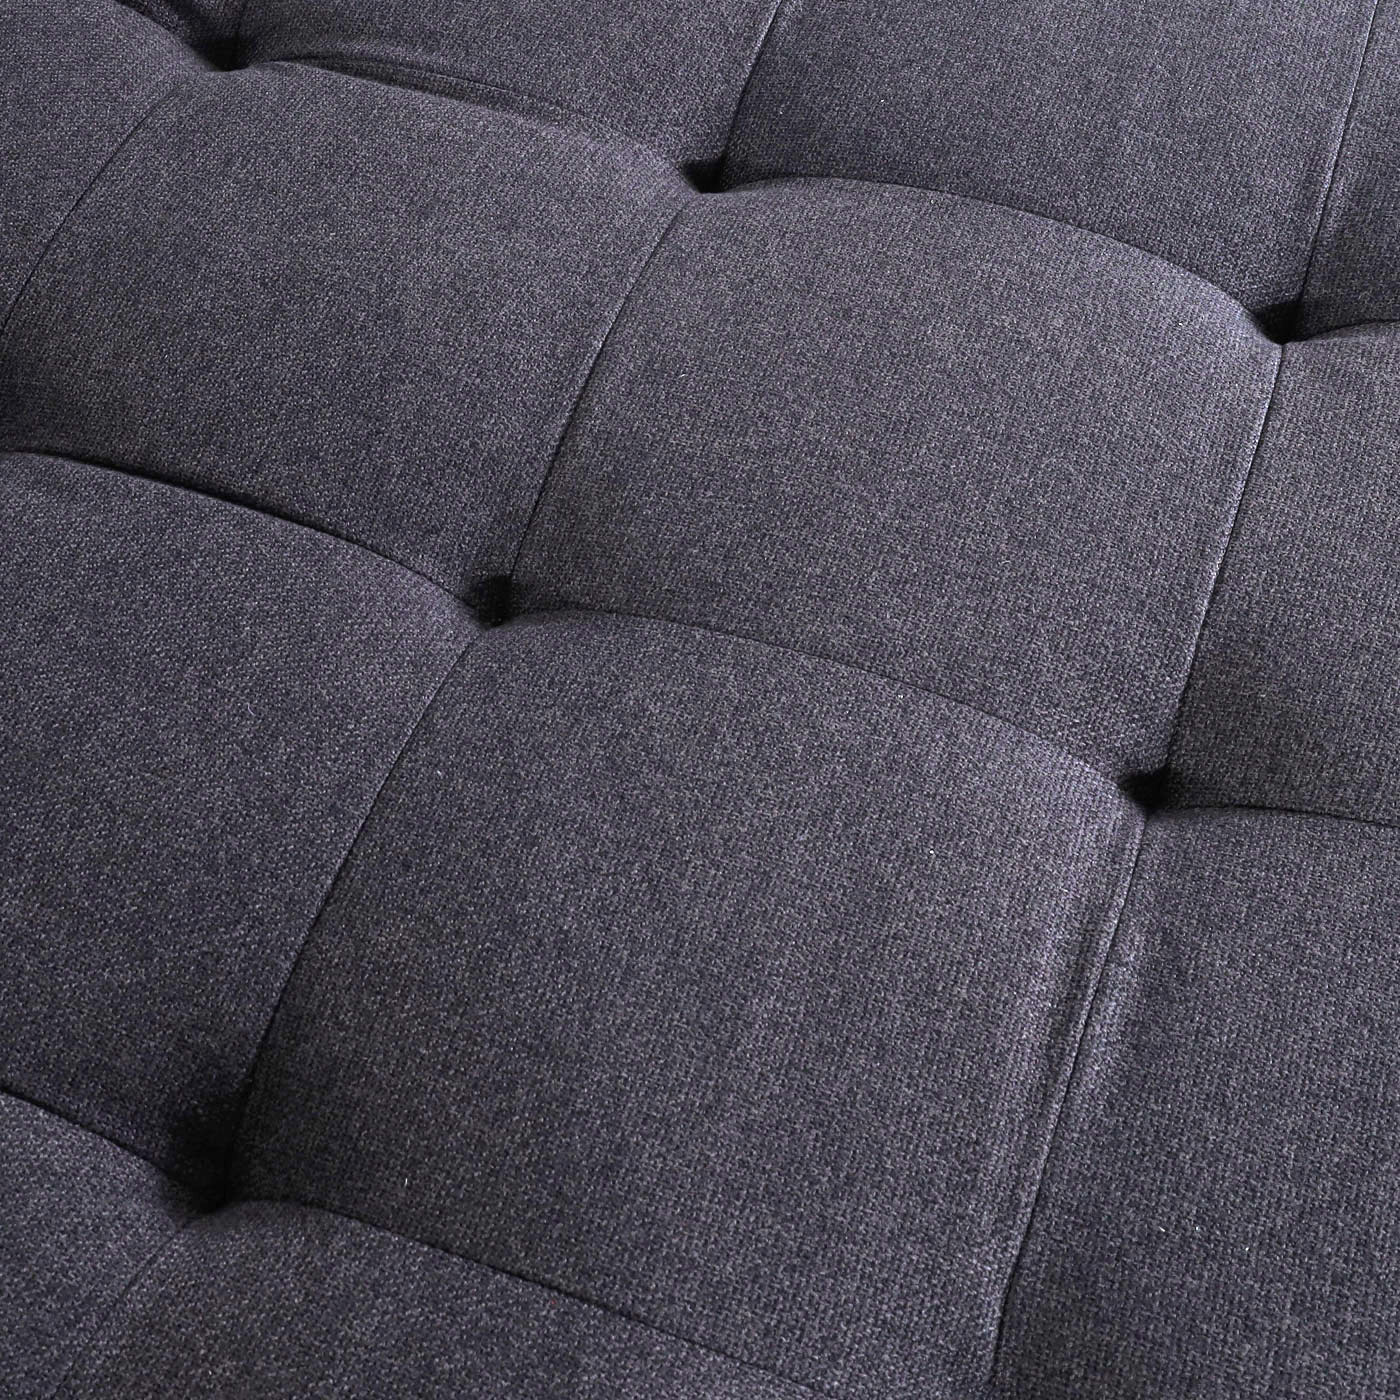 Sofa-Garnitur HWC-M27, Detail Stoff